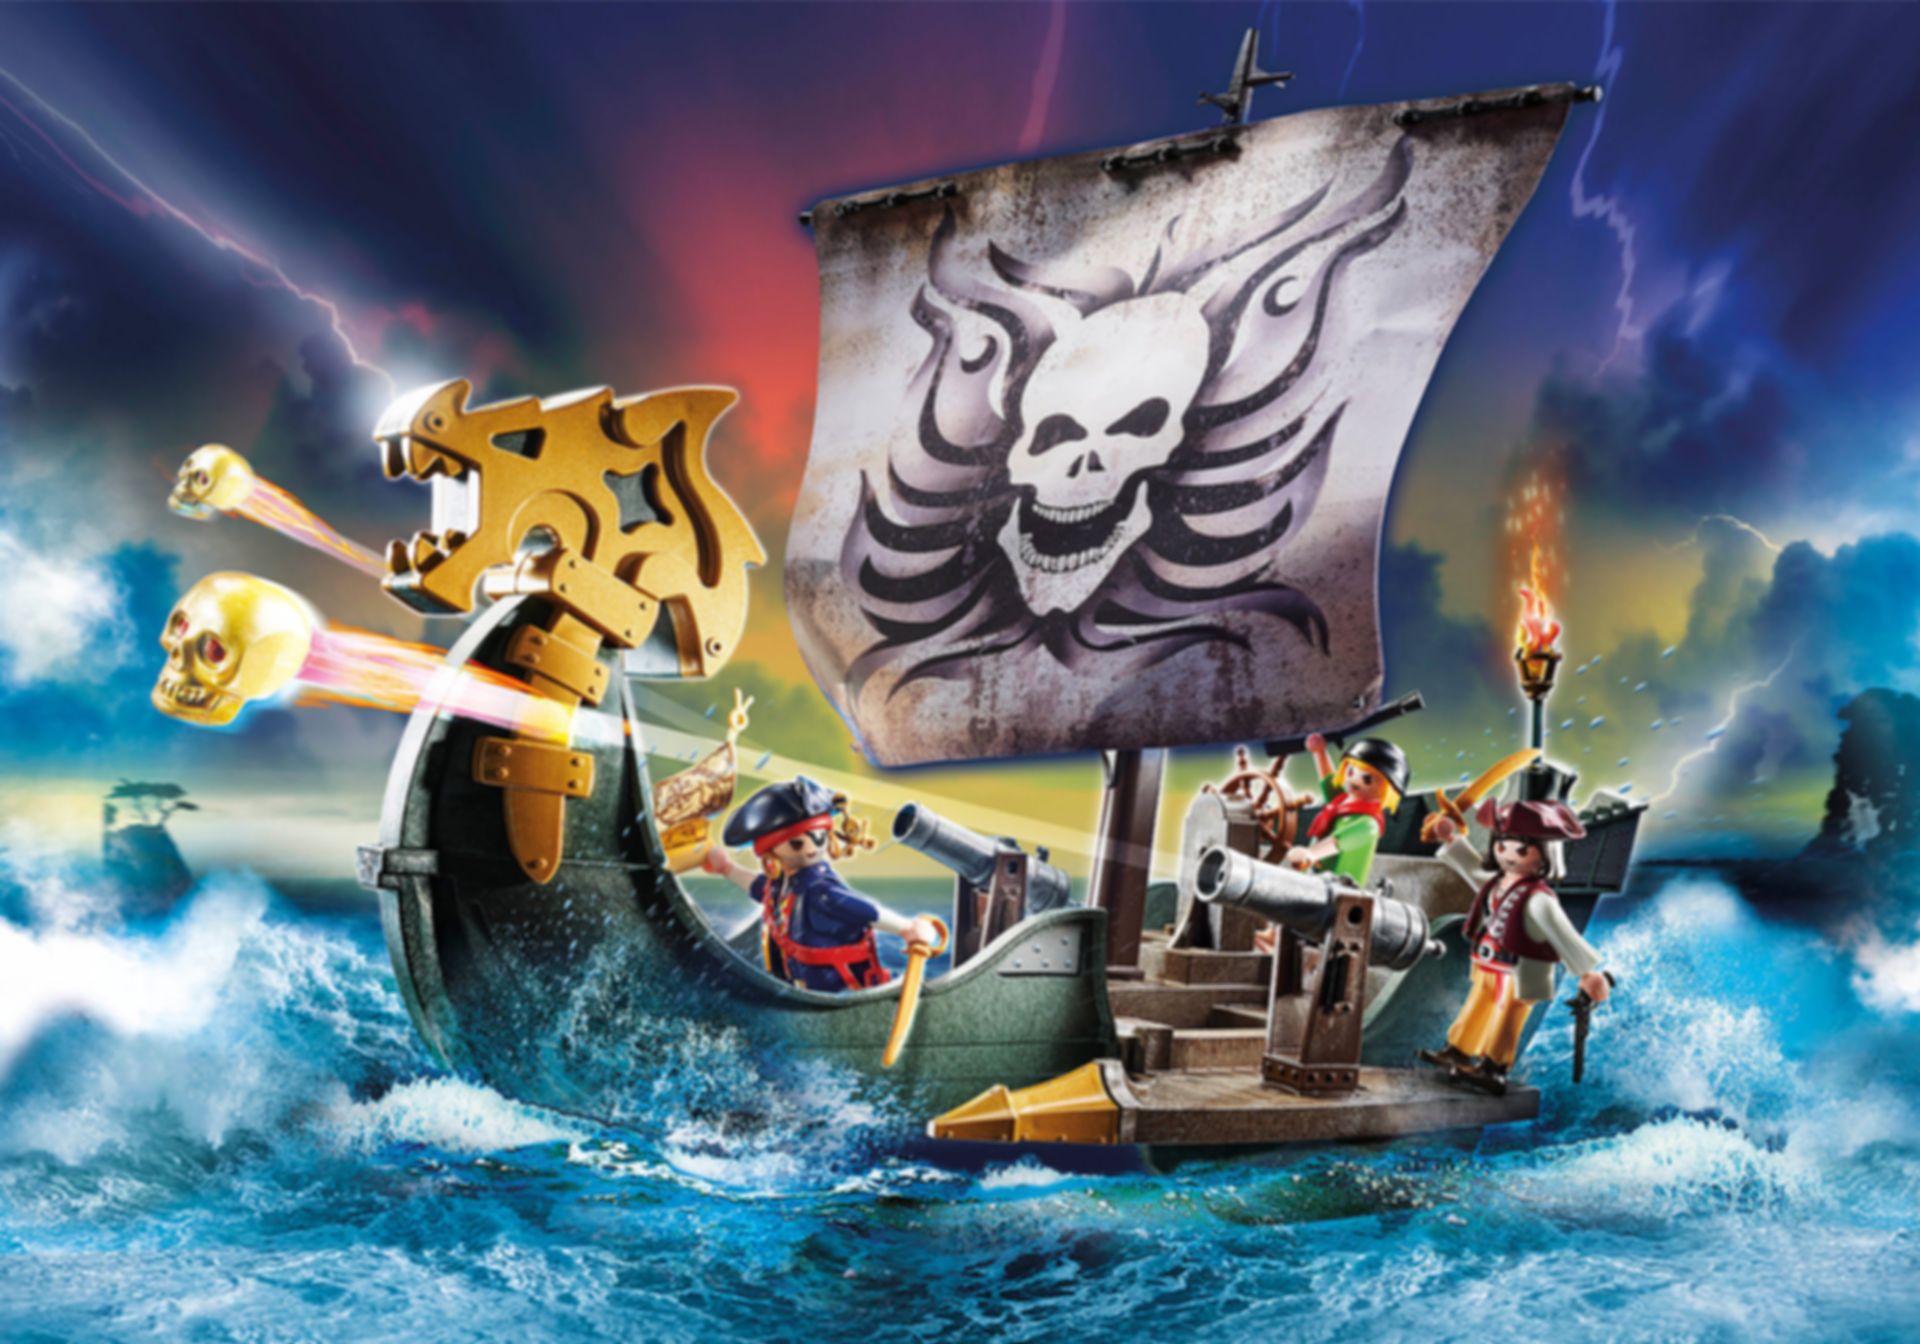 Les meilleurs prix aujourd'hui pour Playmobil® Pirates Bateau pirates  FunPark - PlaymoFinder